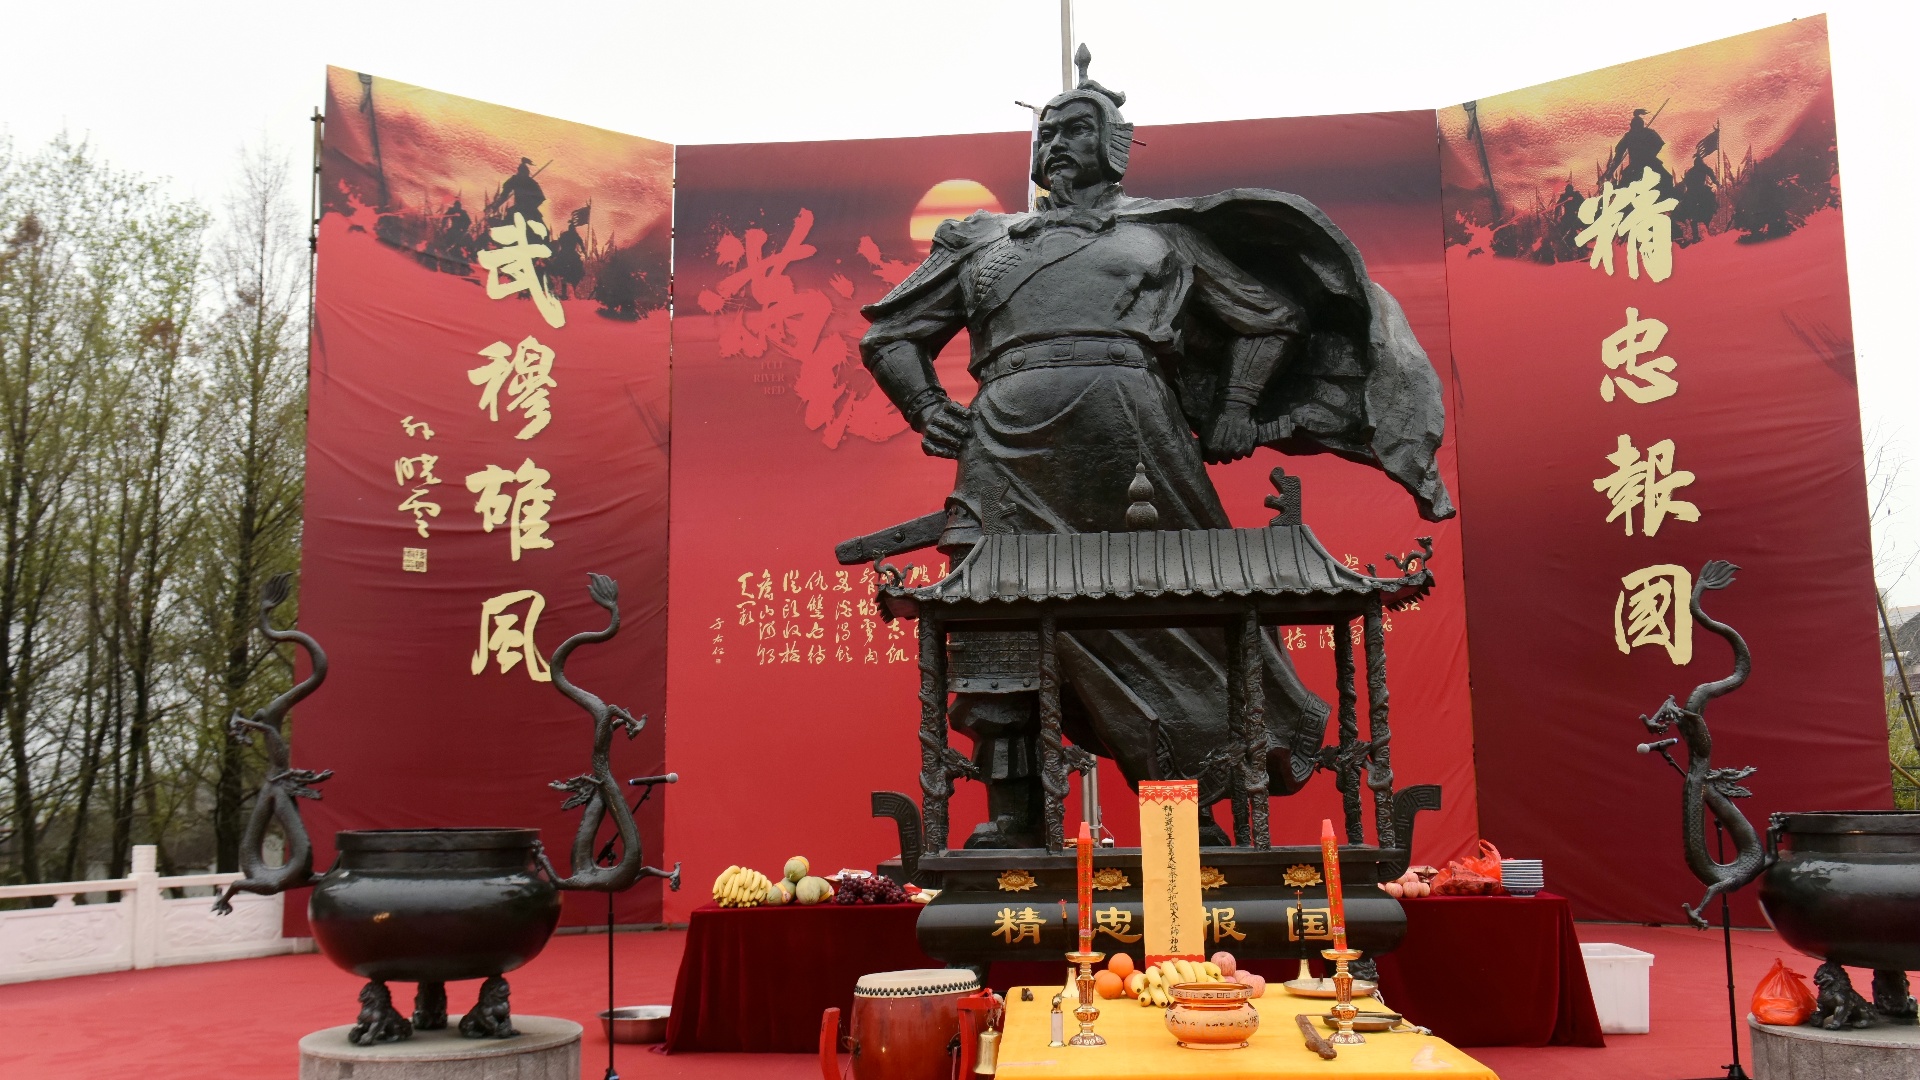 岳研会联盟在靖江市举行祭岳大典 隆重纪念民族英雄岳飞诞辰921周年